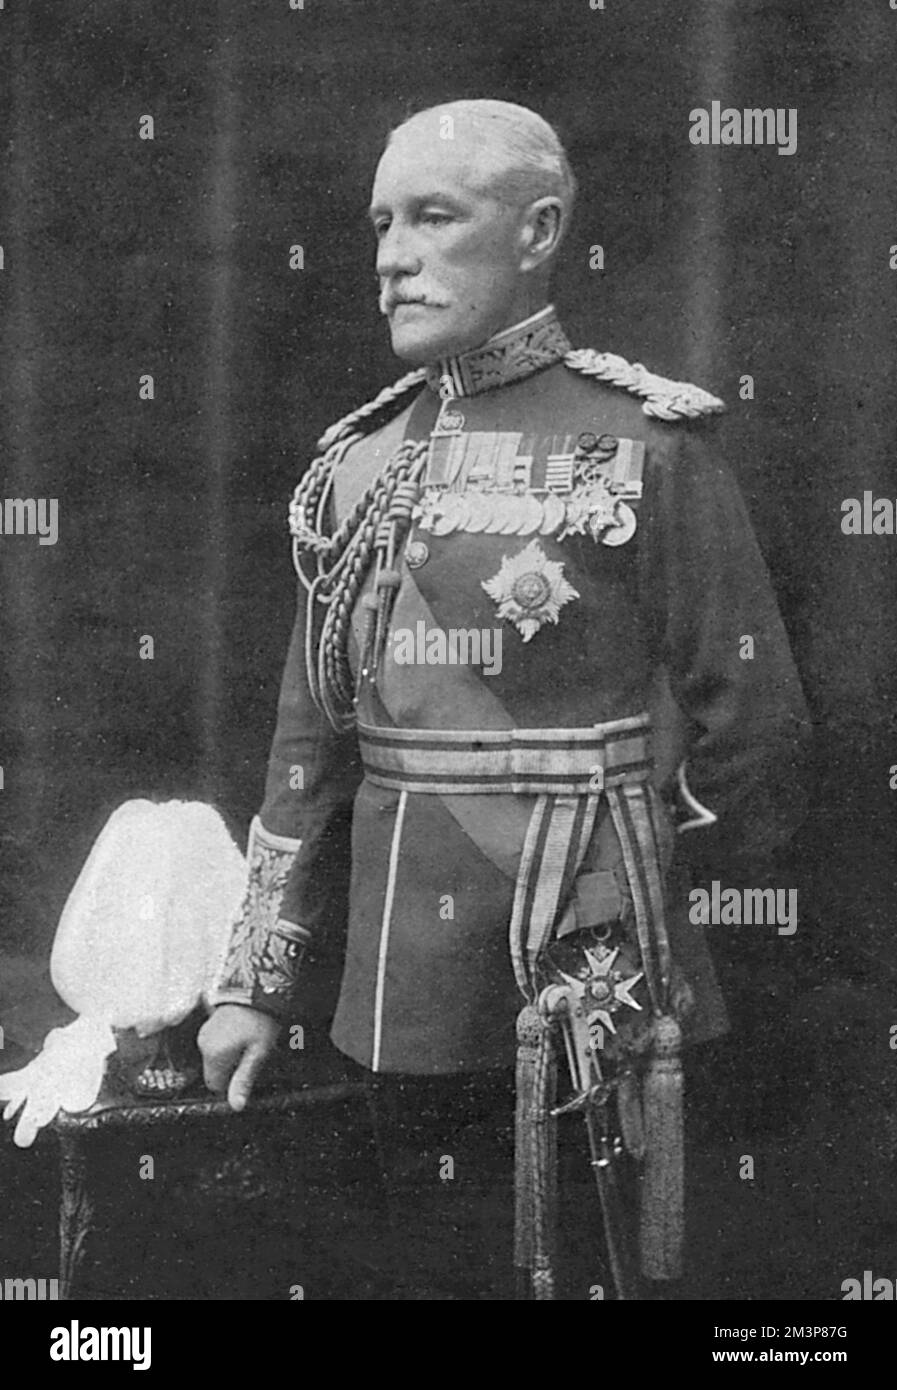 General Sir Horace Smith-Dorrien, nachdem er nach dem Tod von Generalleutnant Sir James Grierson zum Befehlshaber des Zweiten Armeekorps der Britischen Expeditionstruppe ernannt wurde. Datum: 1914 Stockfoto